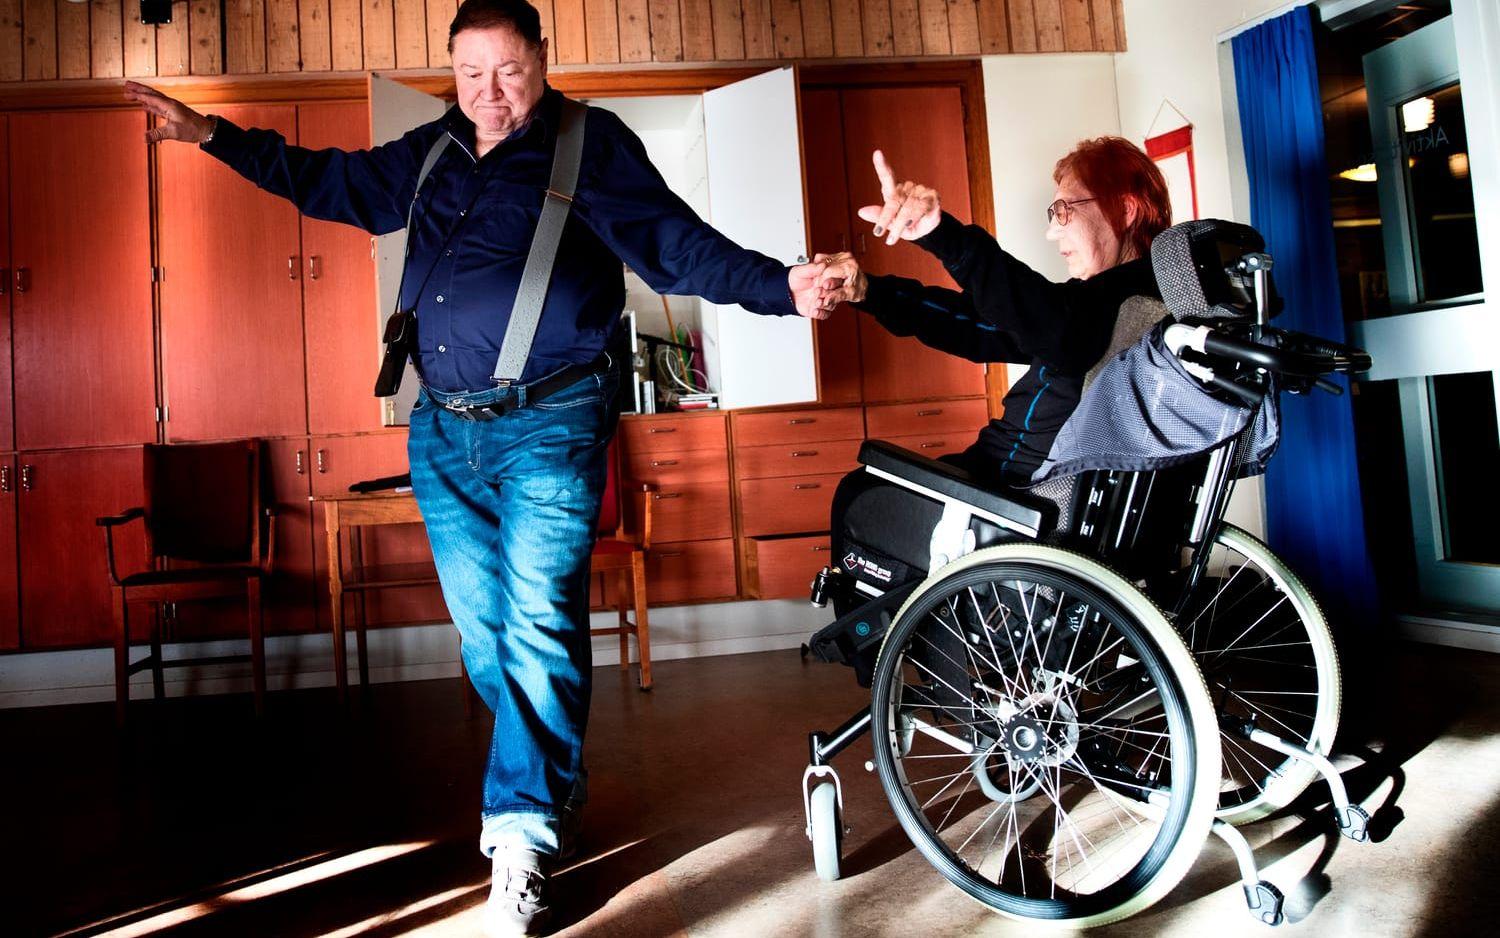 Danspartners. Dan Ersdal och Mona Haggren är båda danspedagoger och har dansat ihop sedan 1970-talet. Nu fokuserar de på salsa för personer som sitter i rullstol. Bild: Anders Ylander.